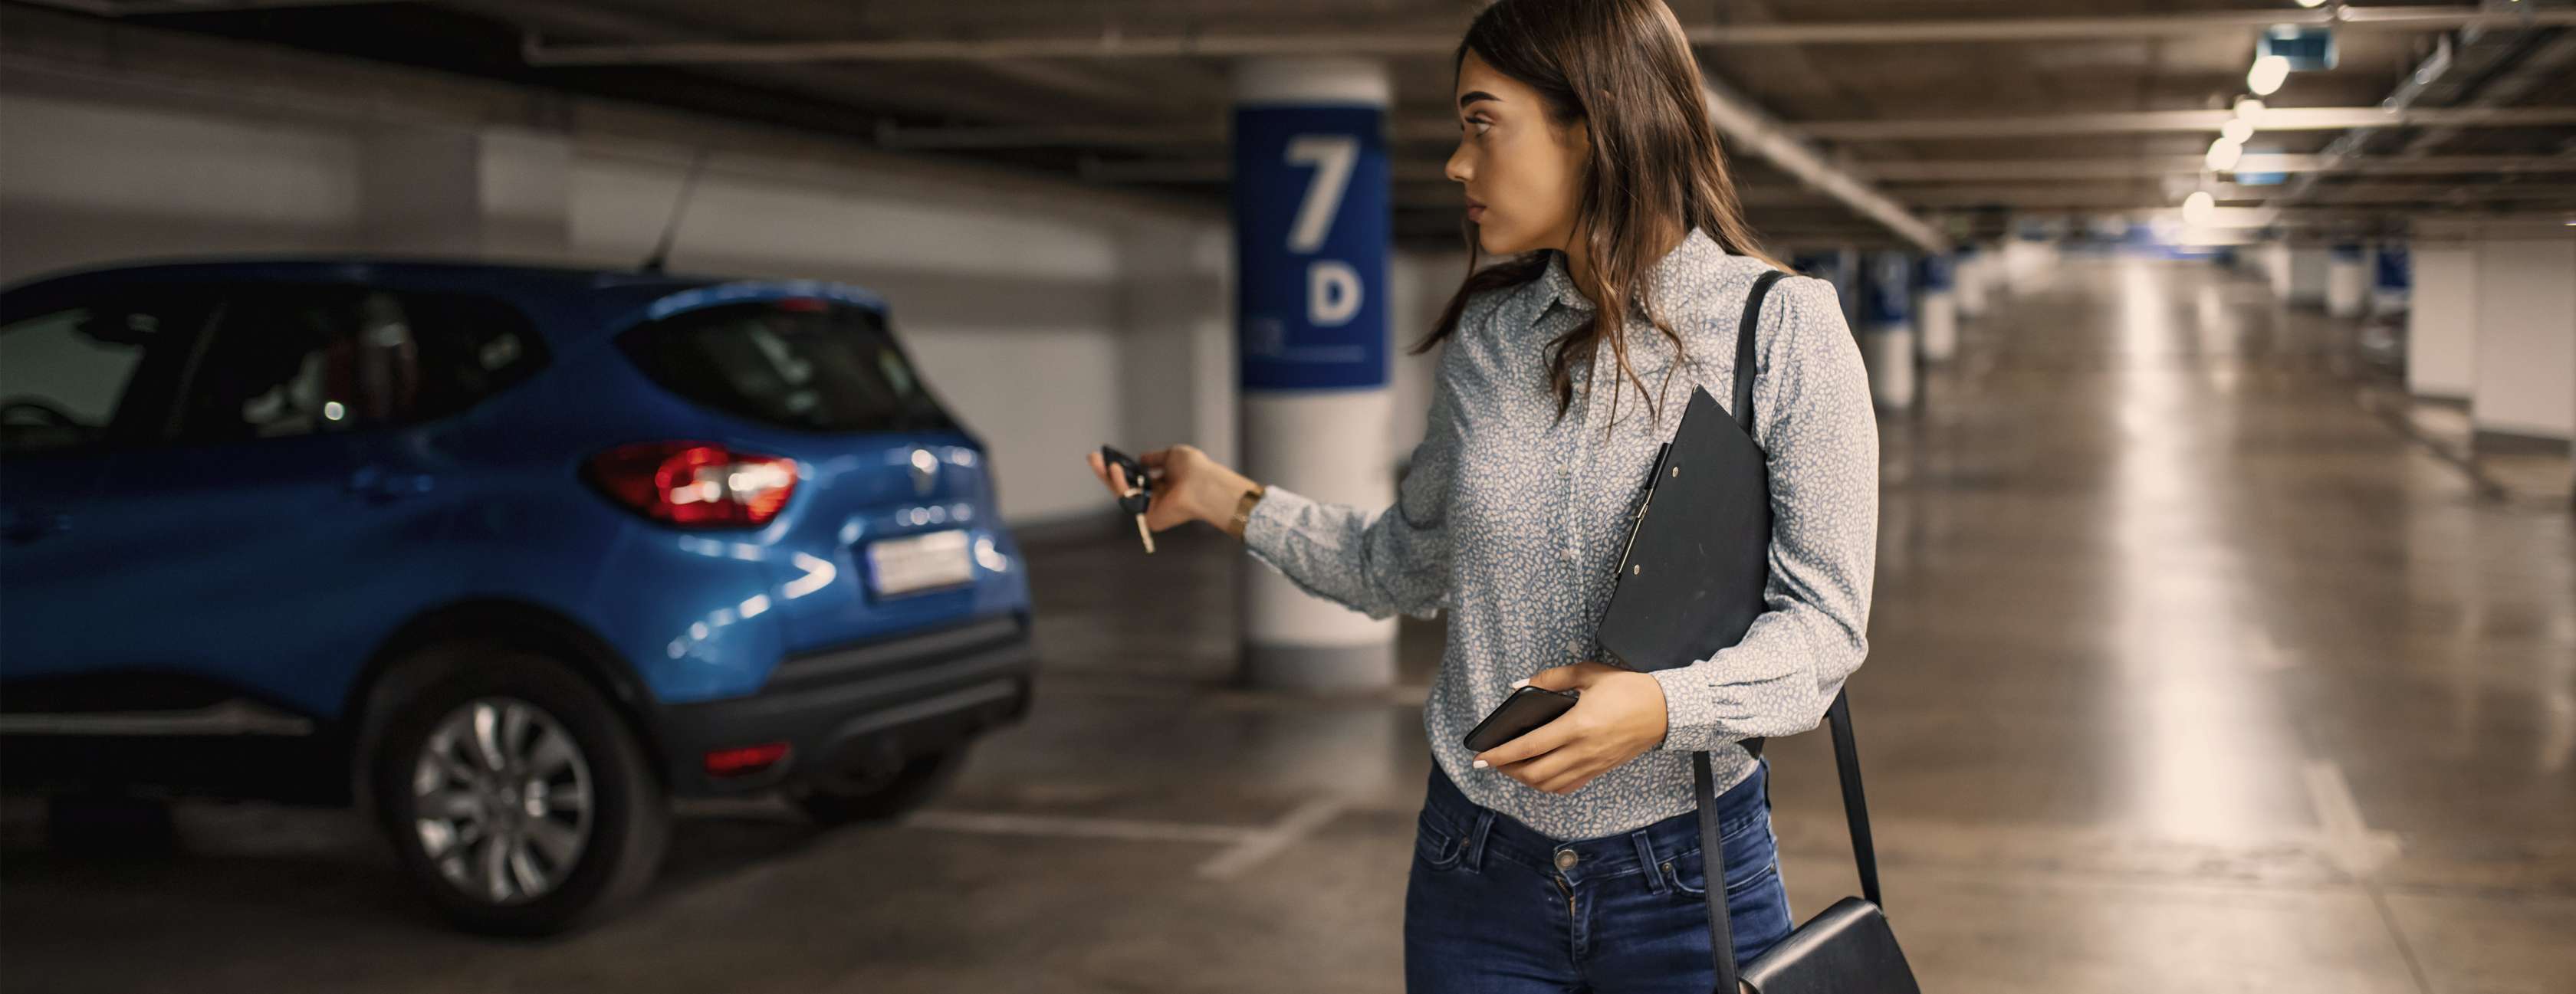 Junge Frau verriegelt mit Funkschlüssel blauen SUV in öffentlicher Tiefgarage